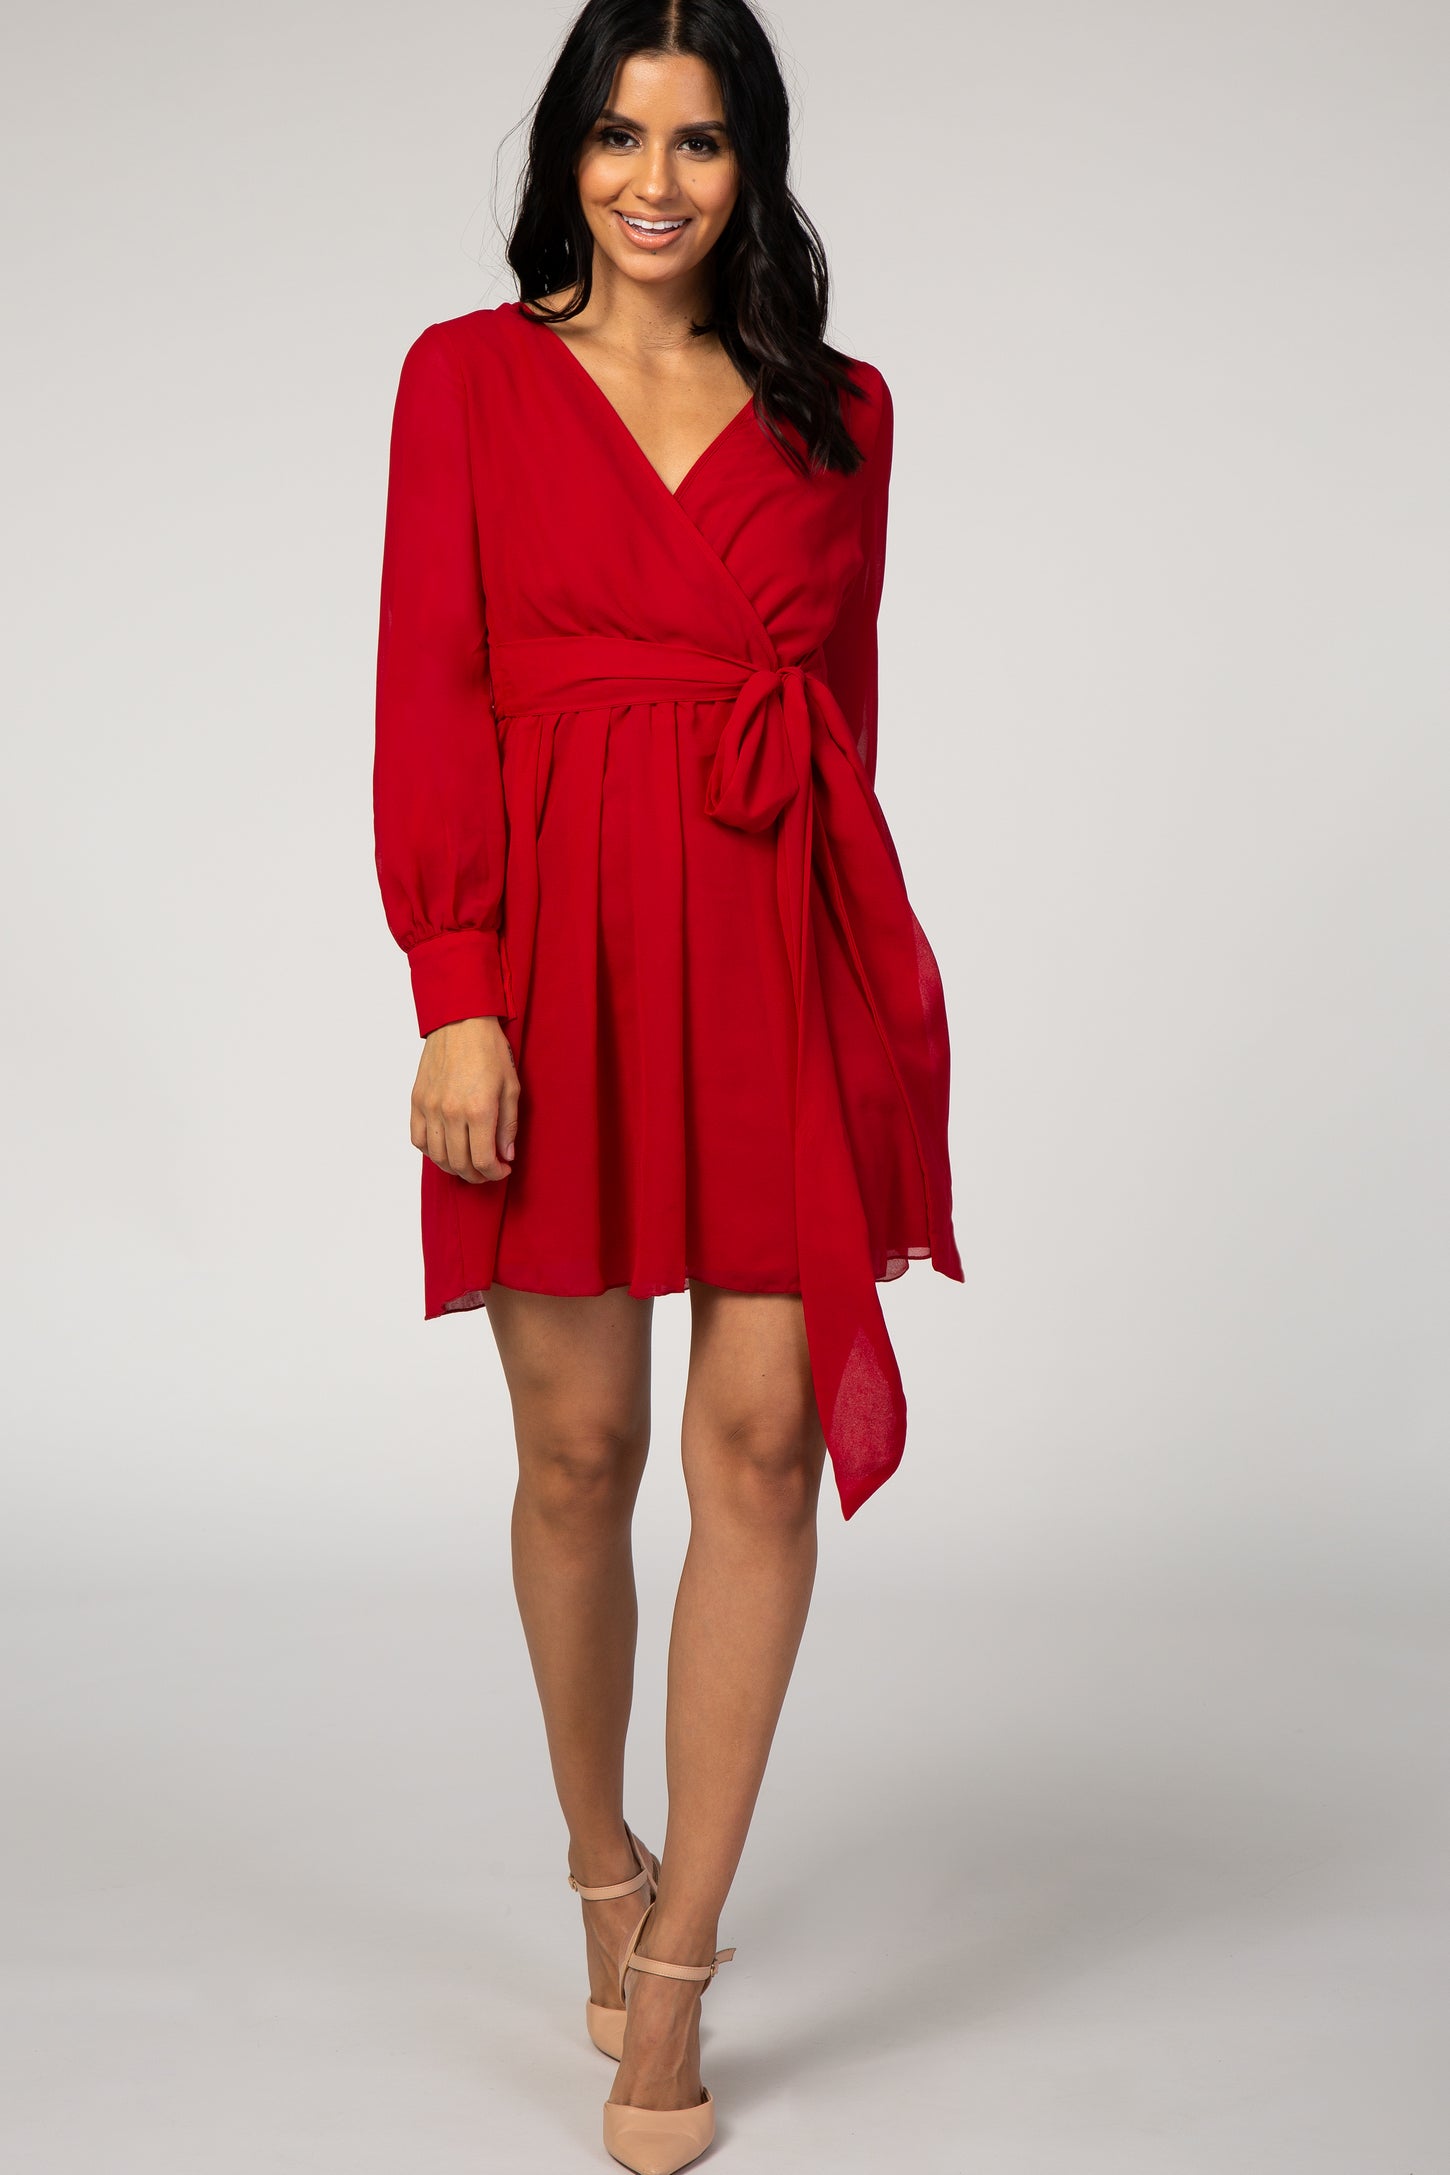 Red Chiffon Maternity Wrap Dress